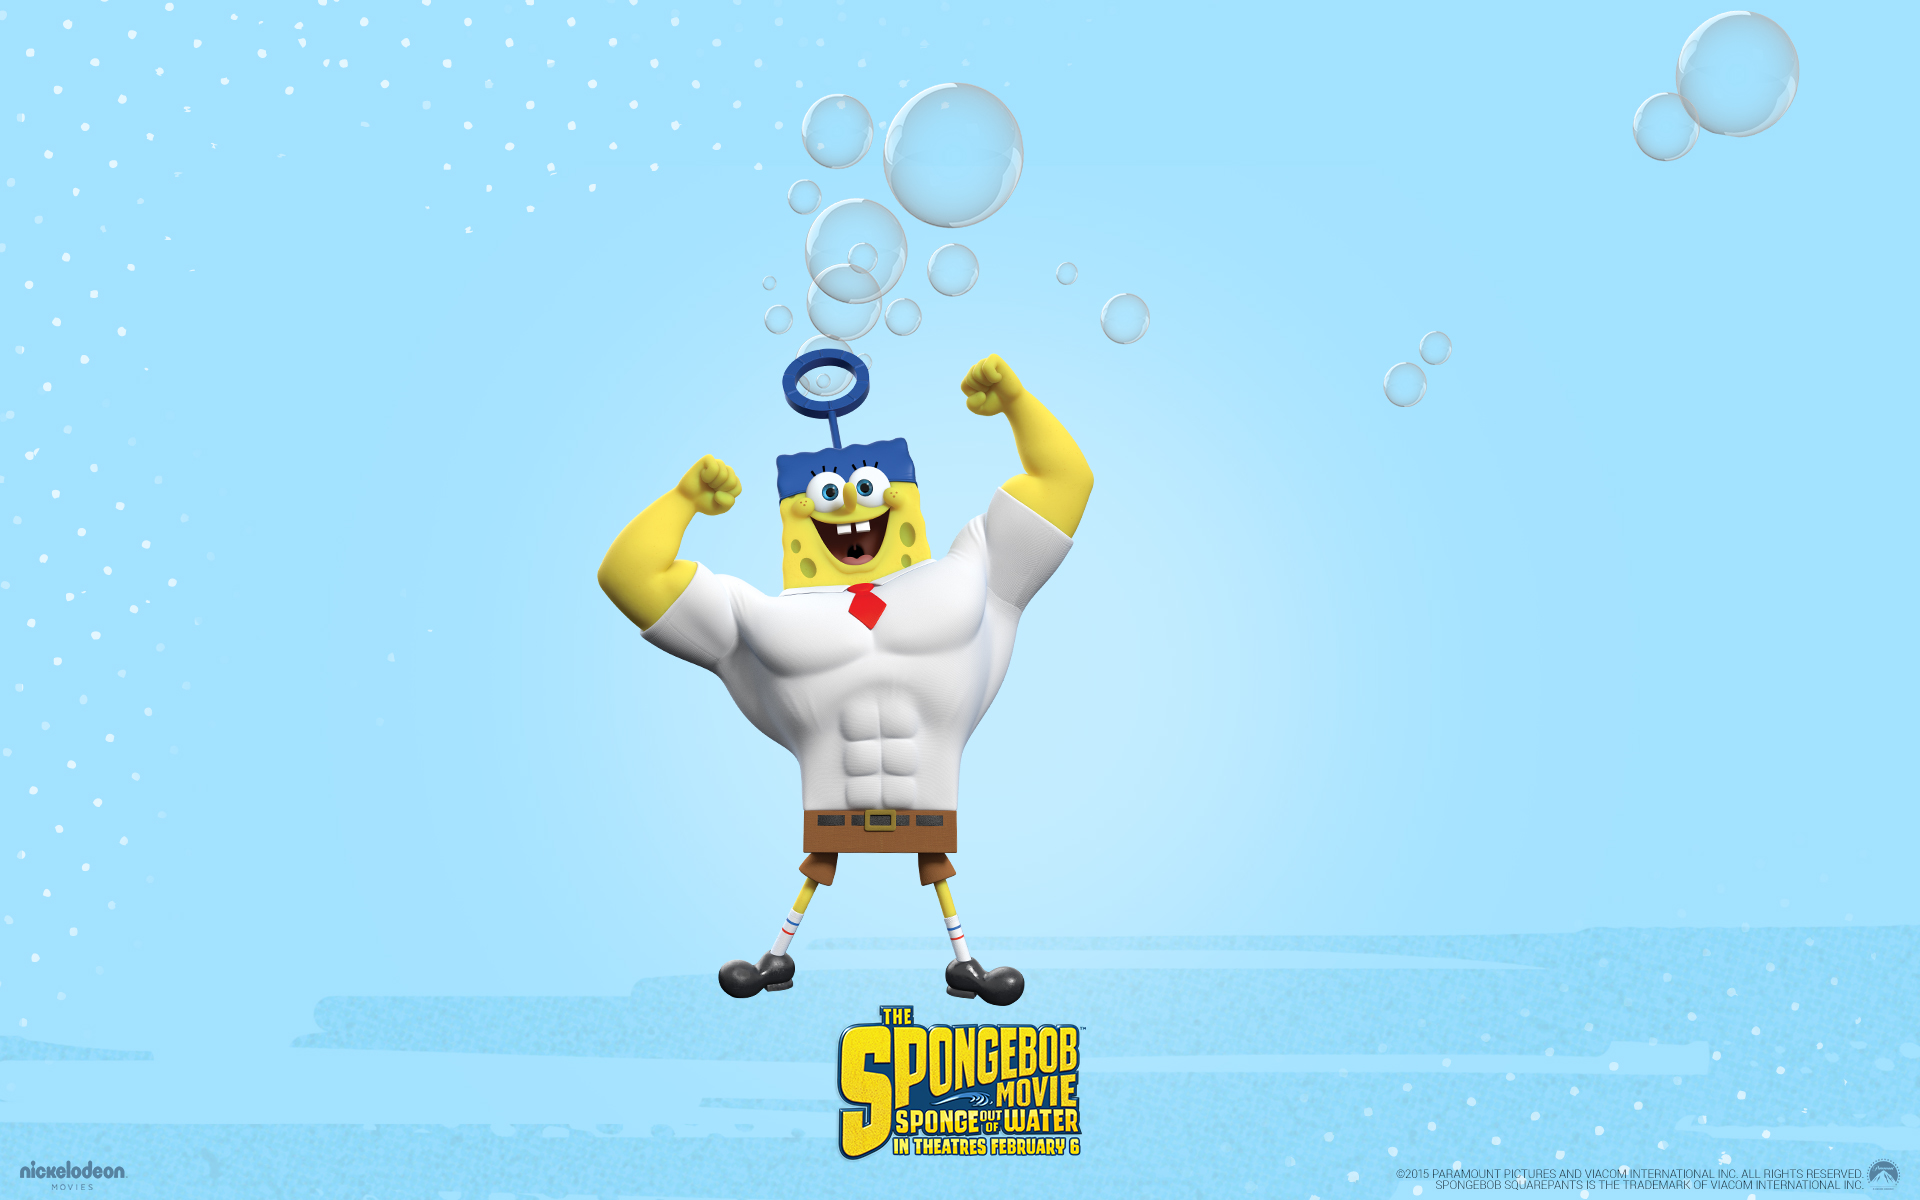 Spongebob Movie Sponge Out Of Water - HD Wallpaper 